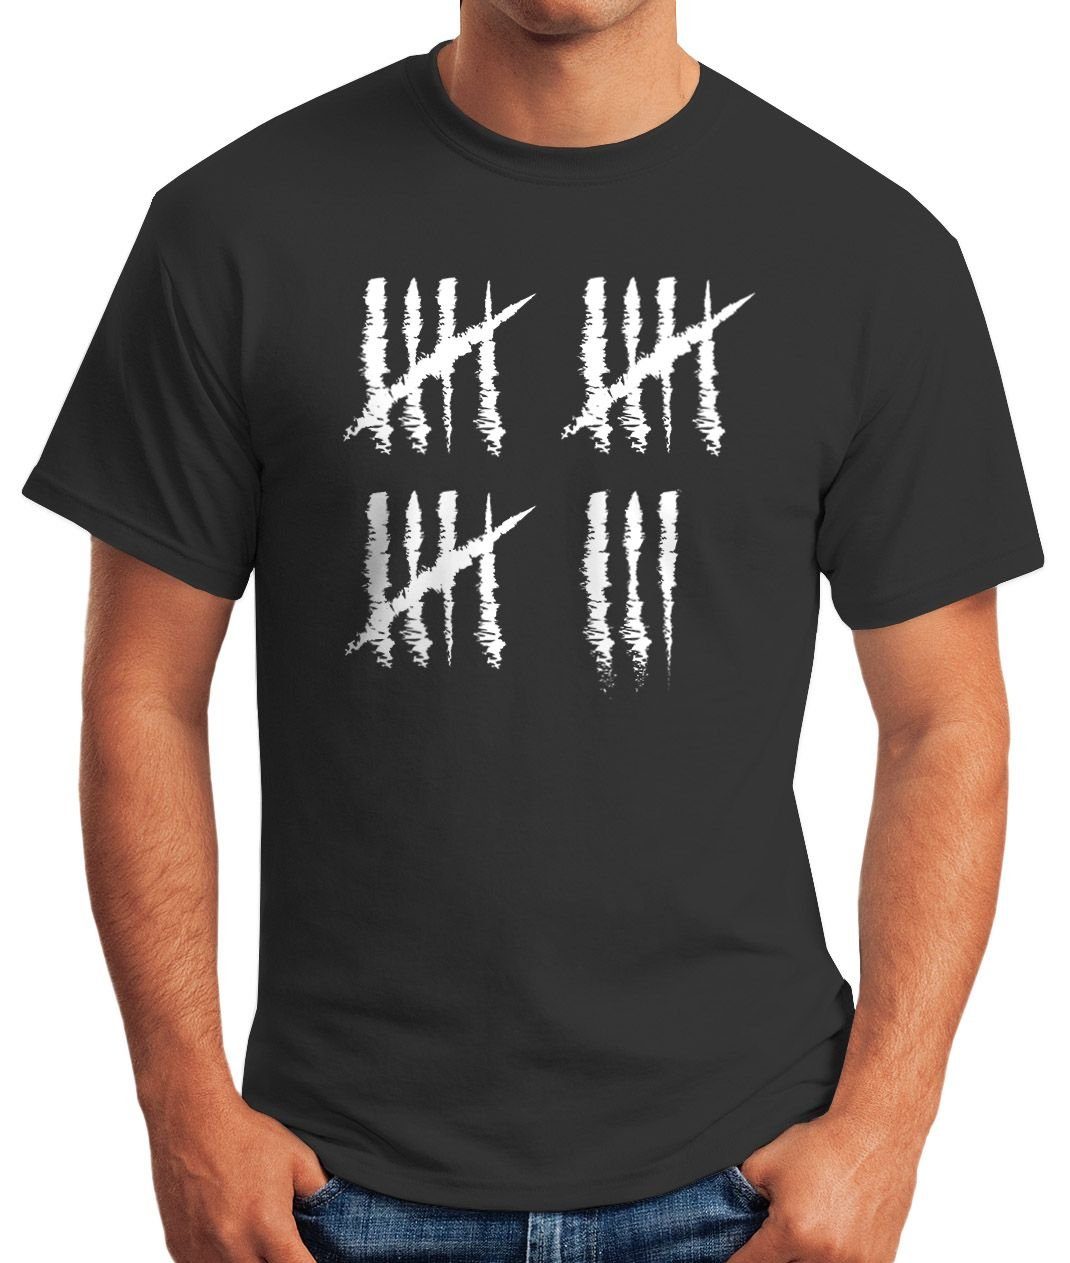 Moonworks® MoonWorks [object Jahrgang Object] Herren Print mit Geschenk Striche Geburtstag Jubiläum Strichliste T-Shirt Print-Shirt anthrazit 18 Fun-Shirt Alter